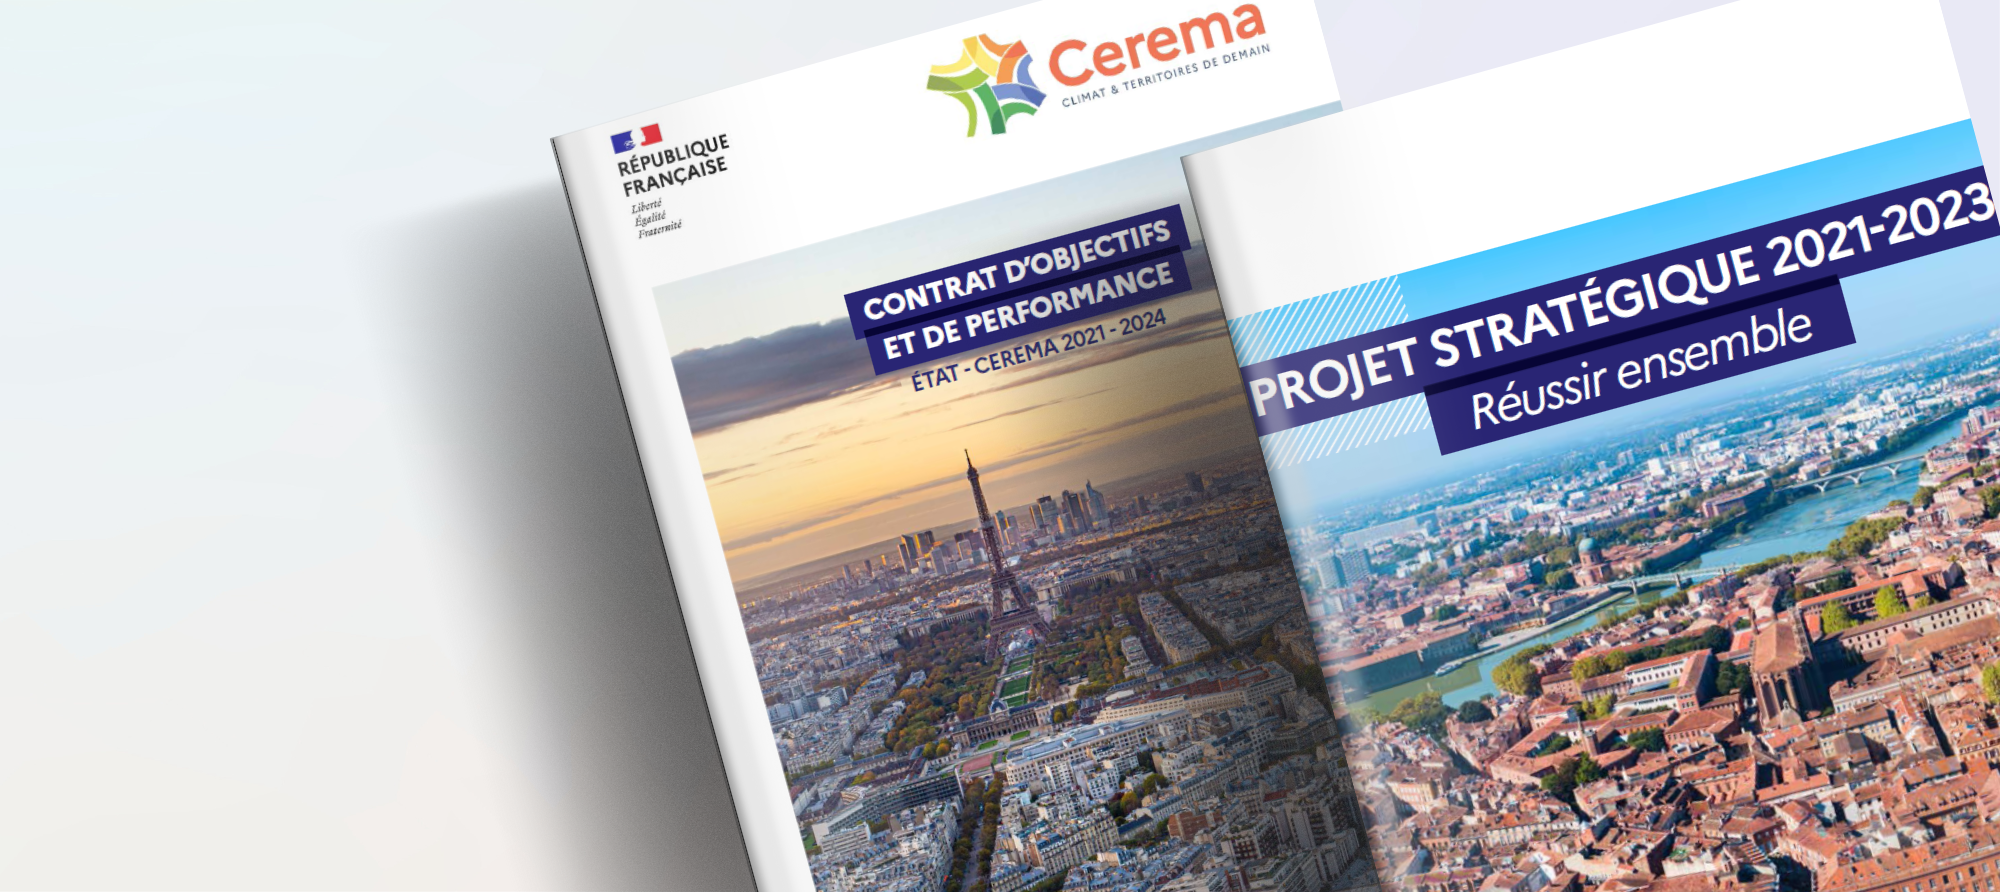 Contributions au Projet Stratégique du Cerema 2025-2028